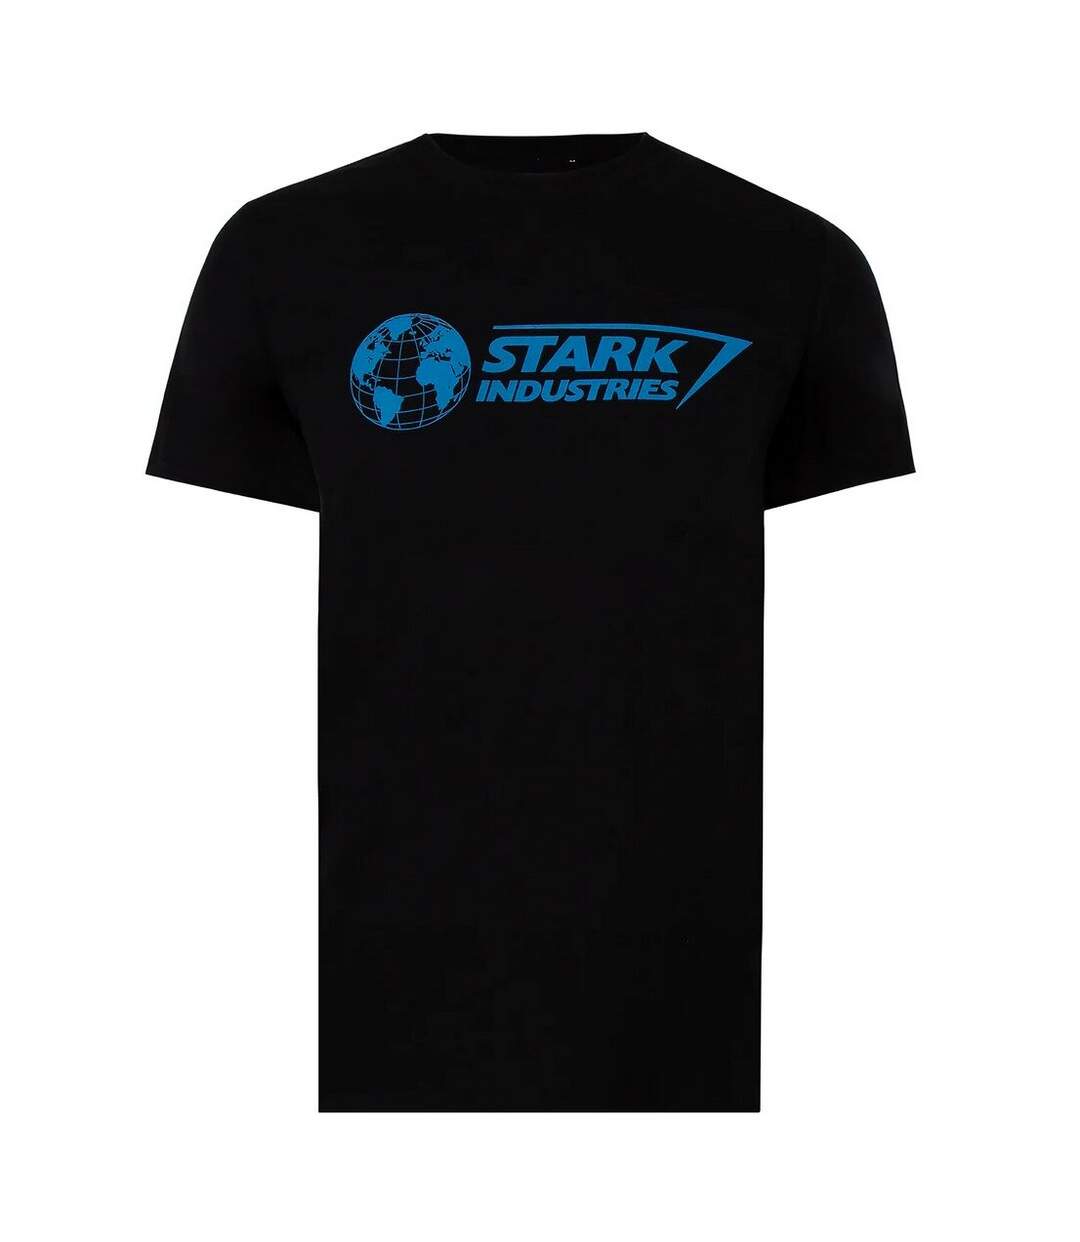 Marvel - T-shirt STARK INDUSTRIES - Homme (Noir / Bleu) - UTTV414